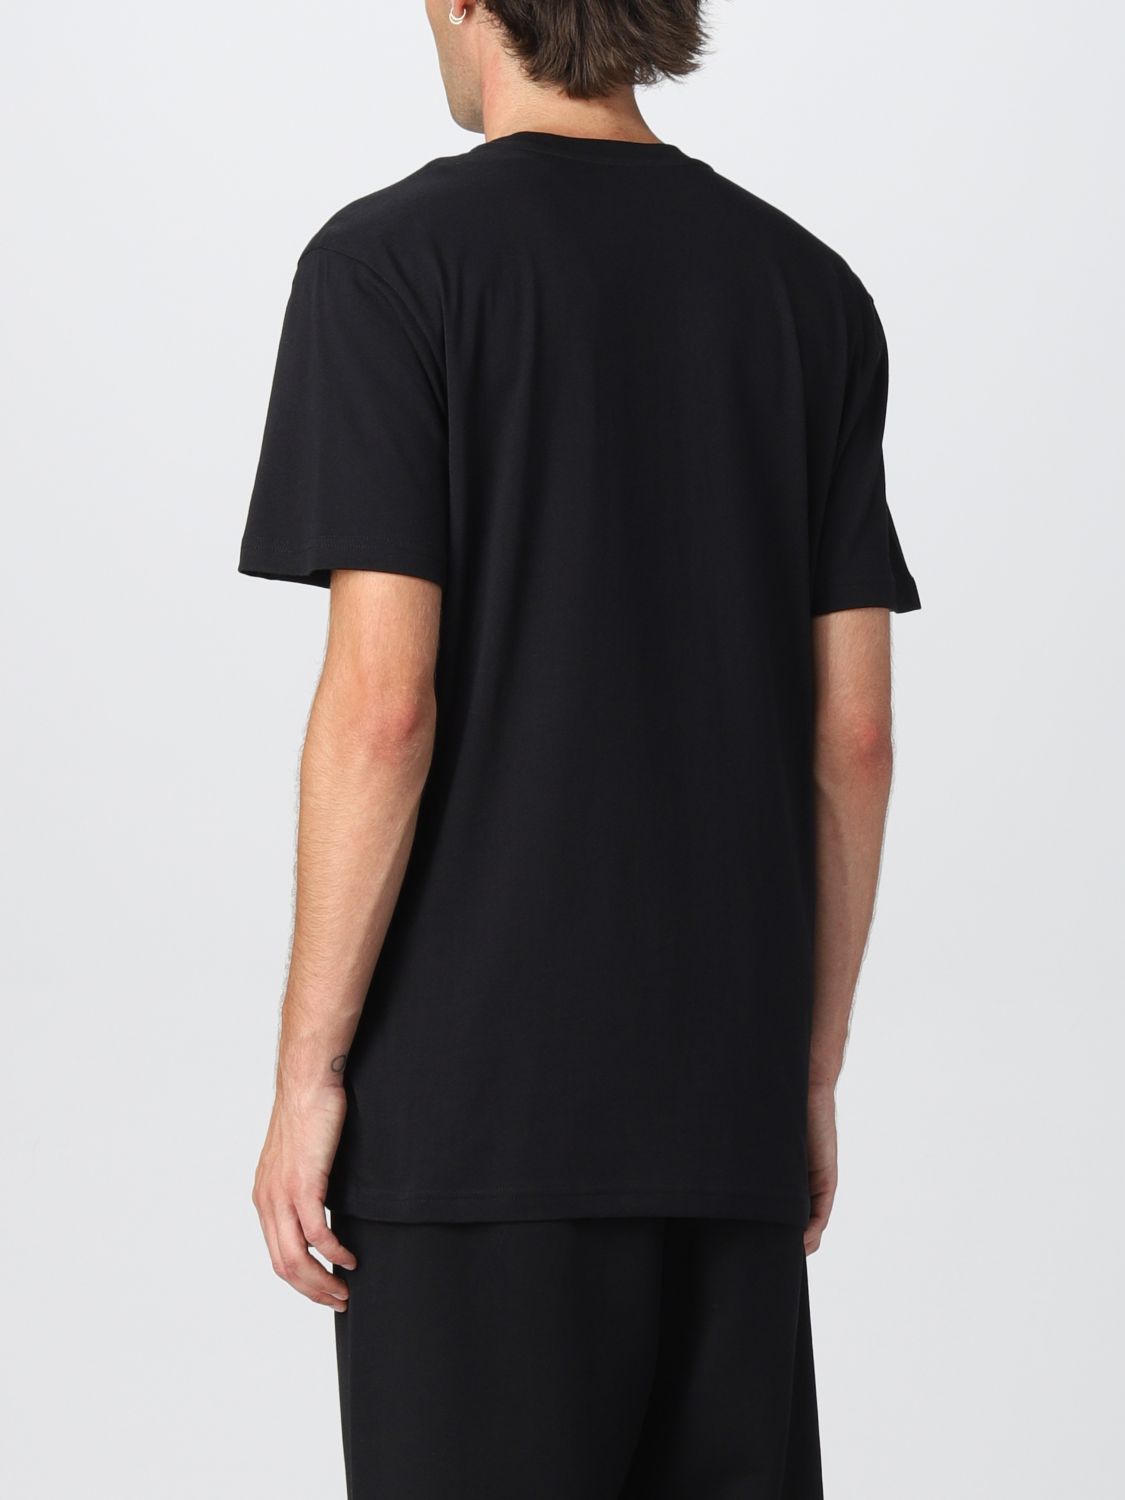 Tシャツ モスキーノ: Tシャツ Moschino Couture メンズ ブラック 3